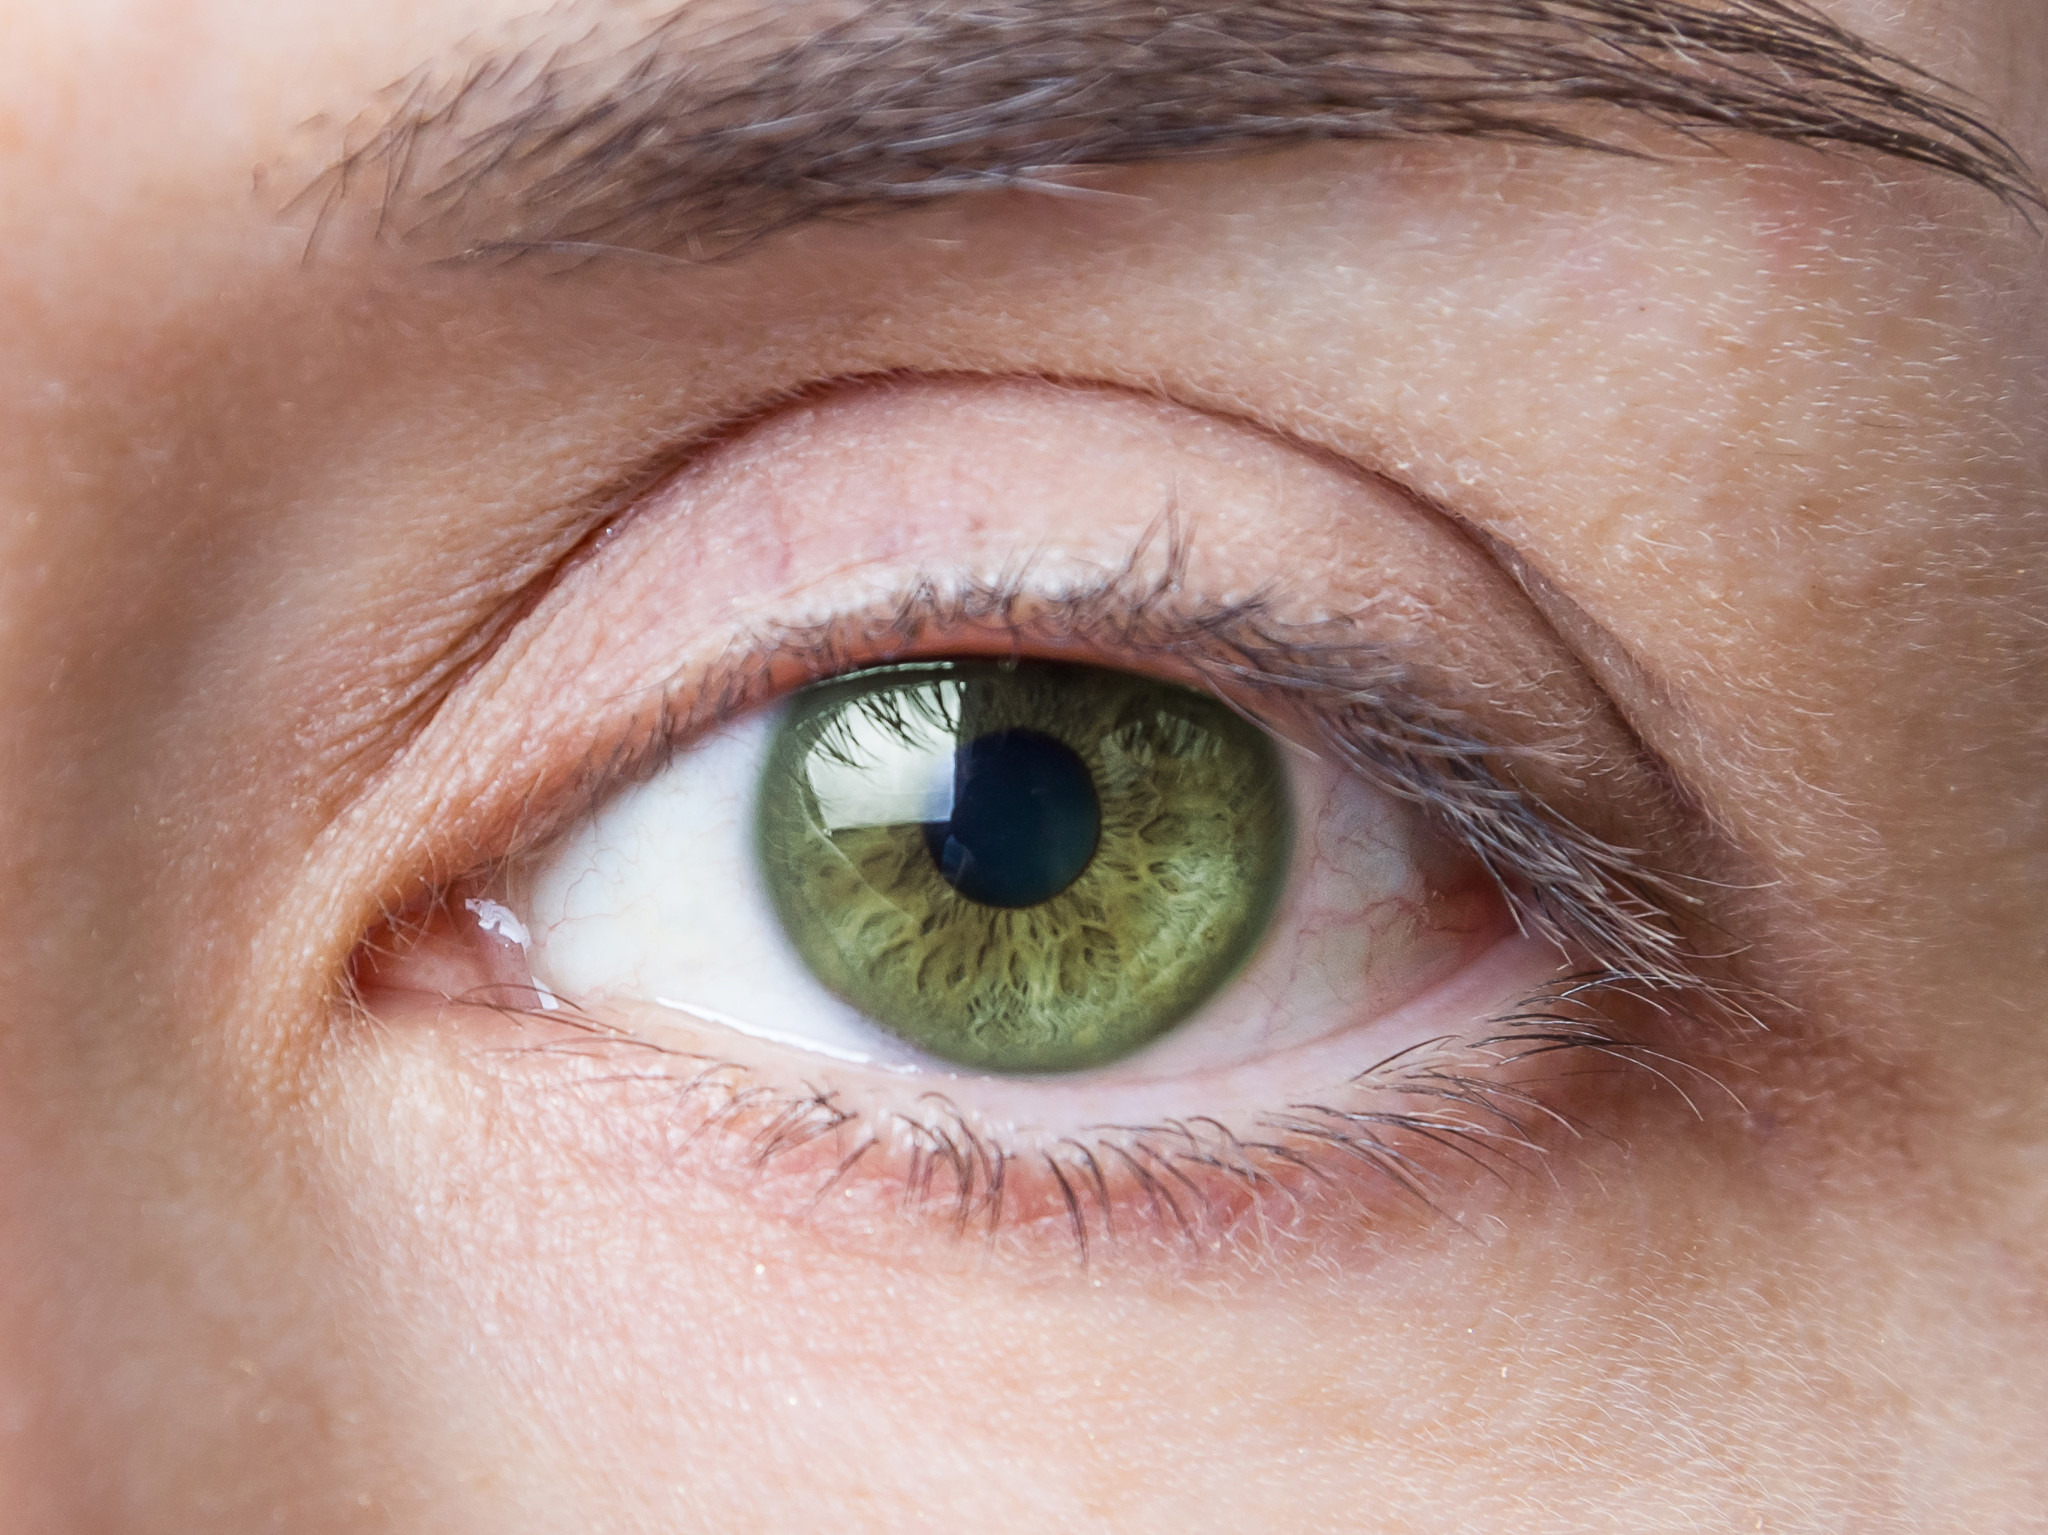 ความเสี่ยงของการติดเชื้อที่ตาหลังการผ่าตัดต้อกระจกสามารถป้องกันได้ด้วยยาปฏิชีวนะ